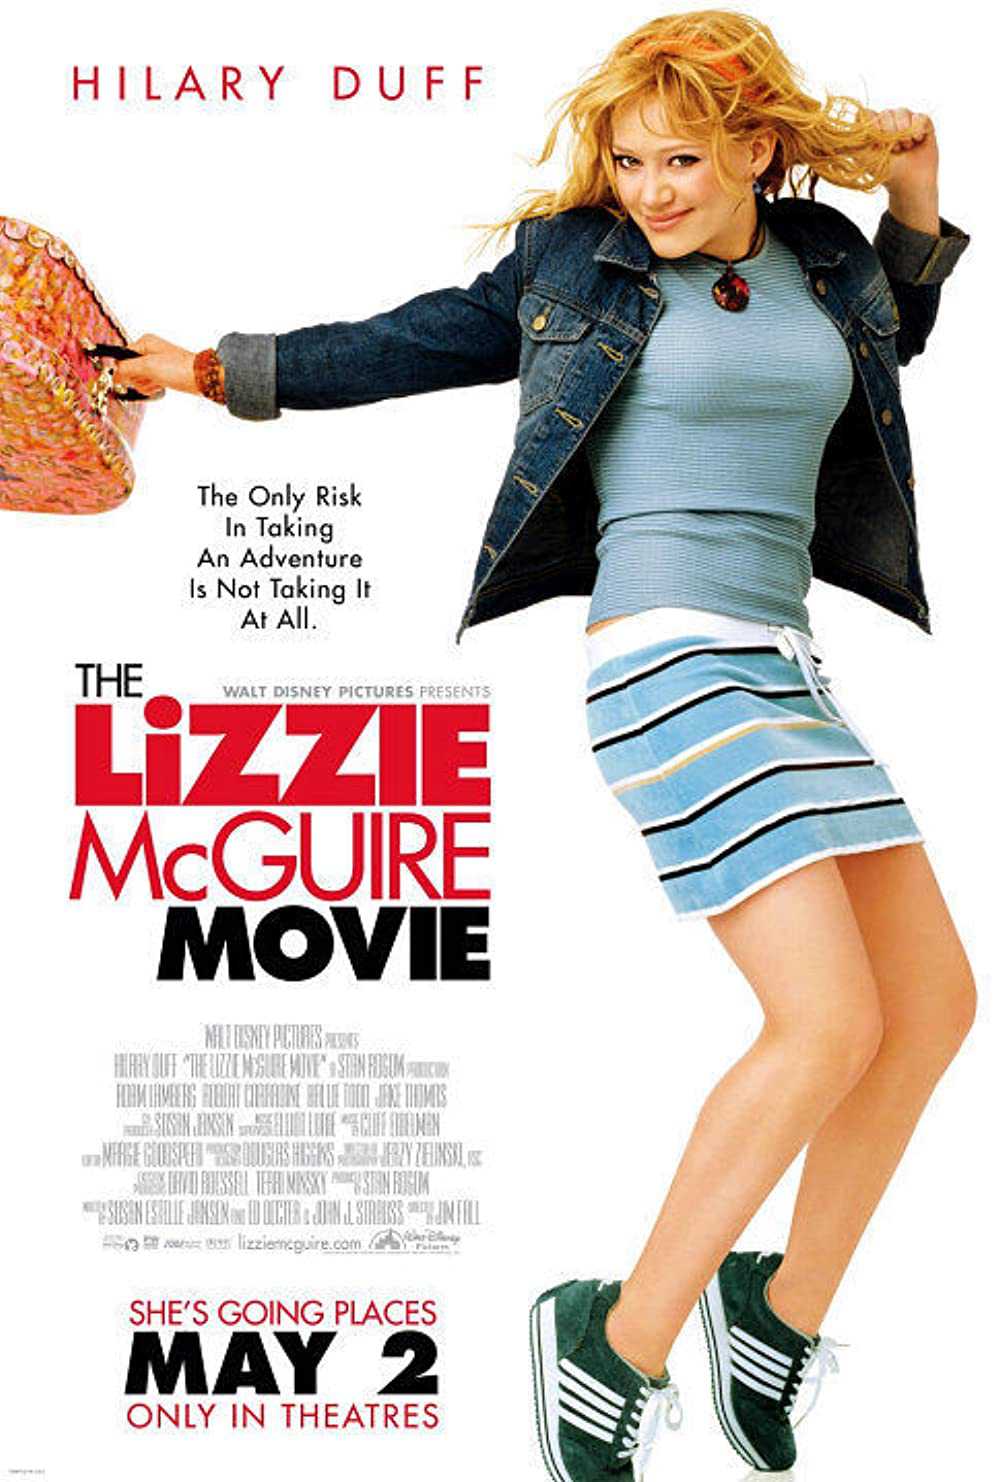 Nàng Lizzie McGuire - The Lizzie McGuire Movie